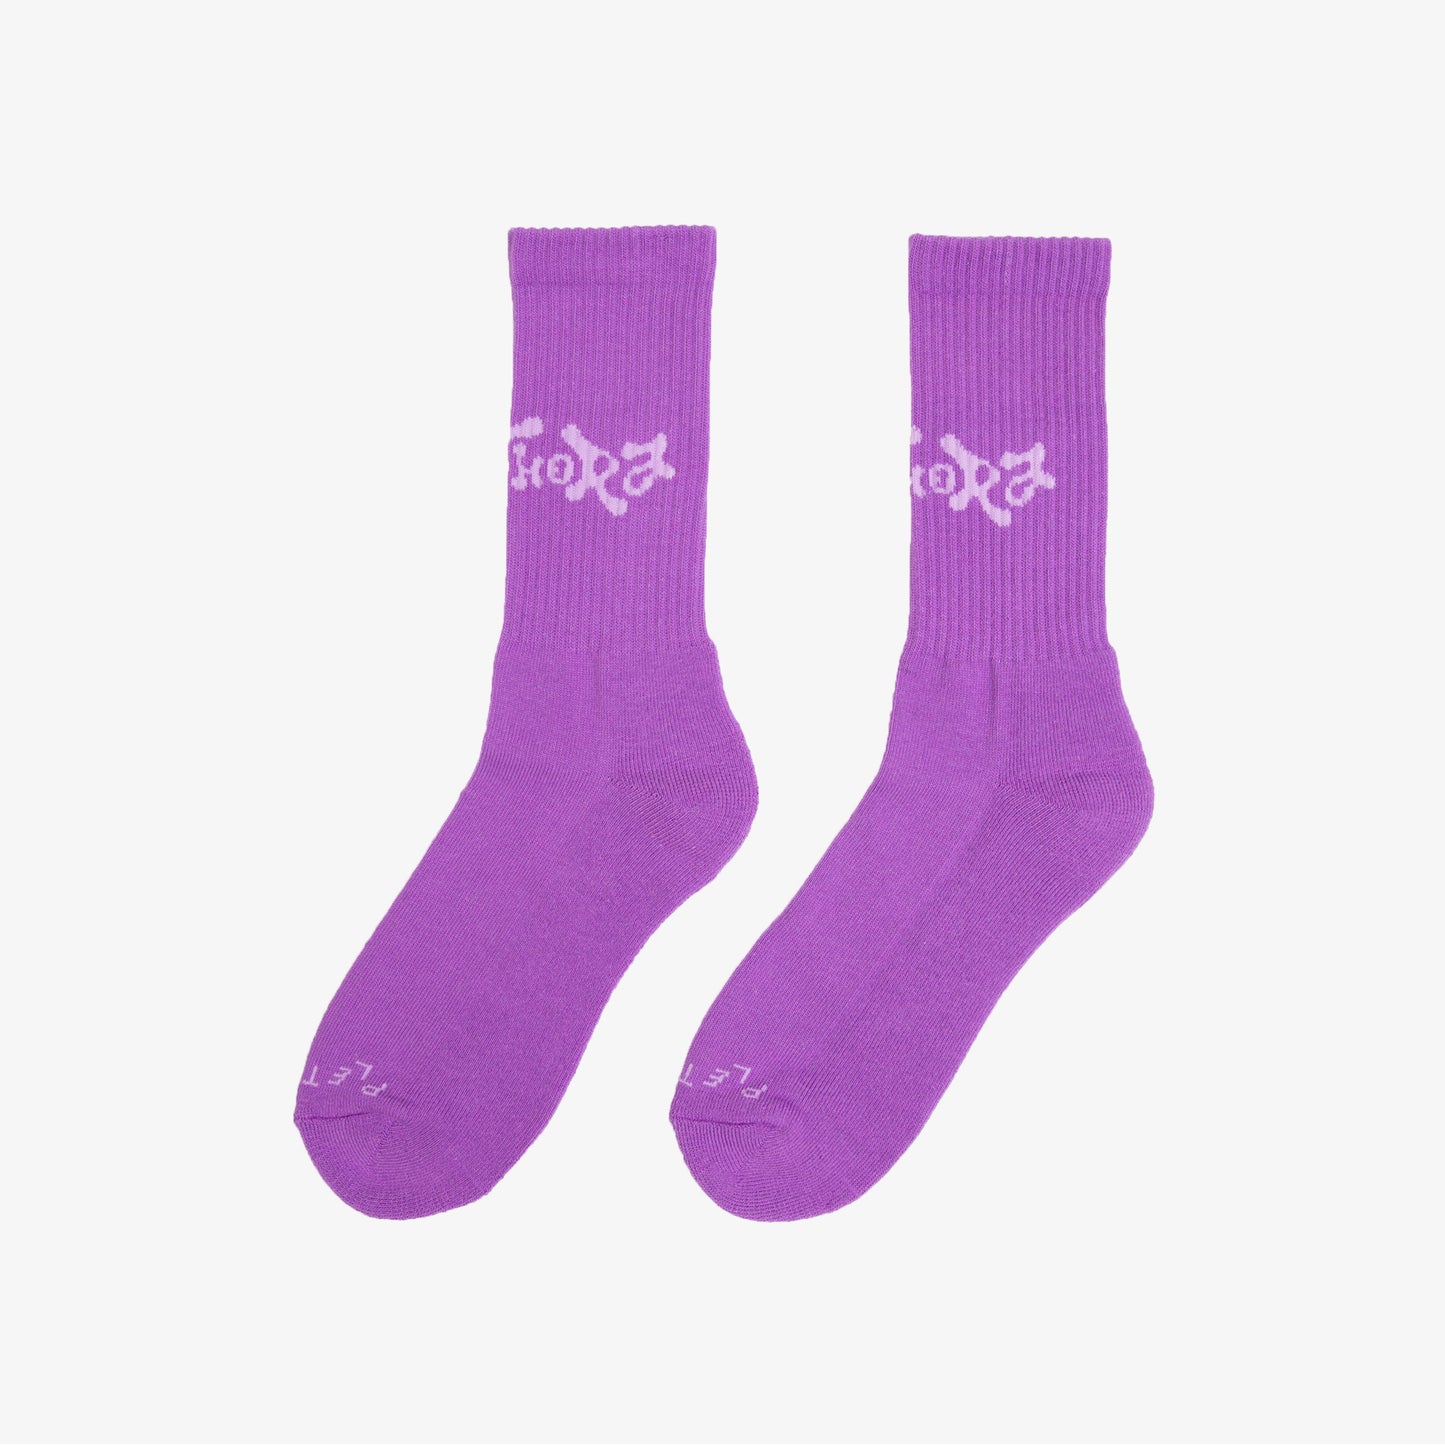 PLETHORA "Wave" Socks - Purple Yam